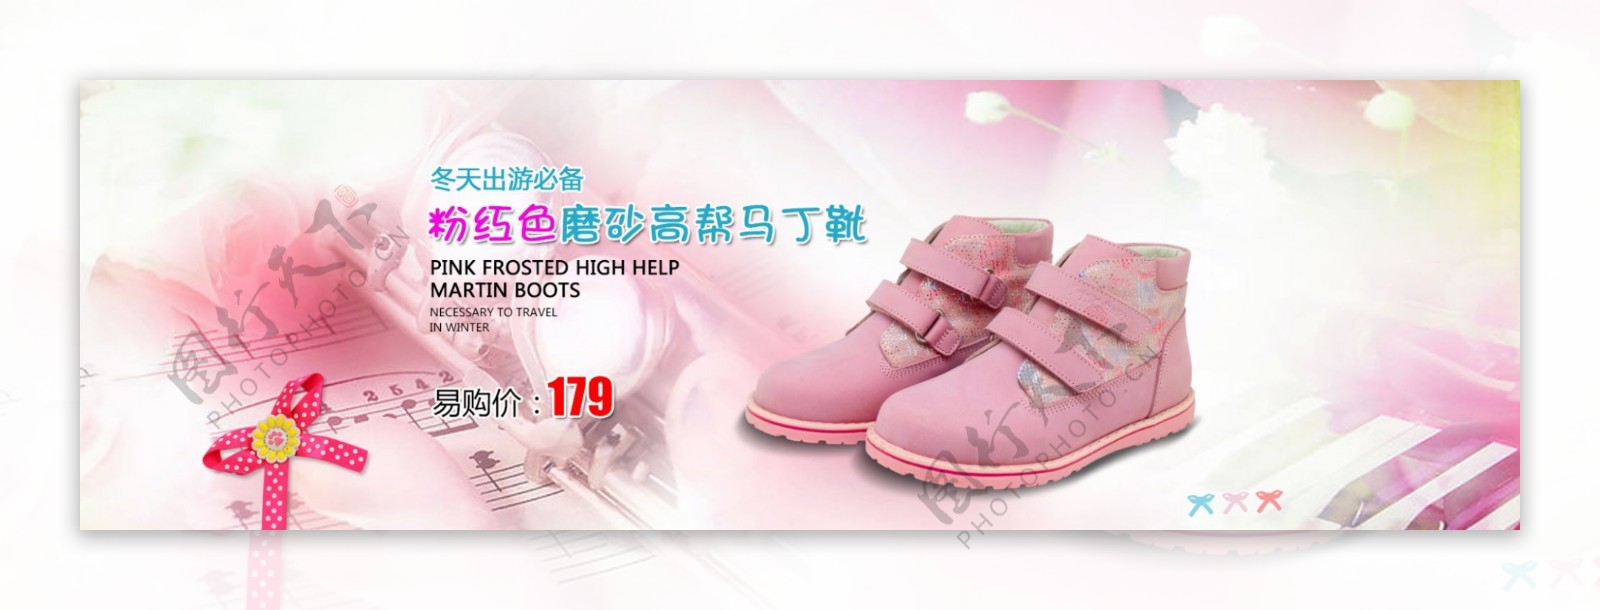 粉色童鞋淘宝海报